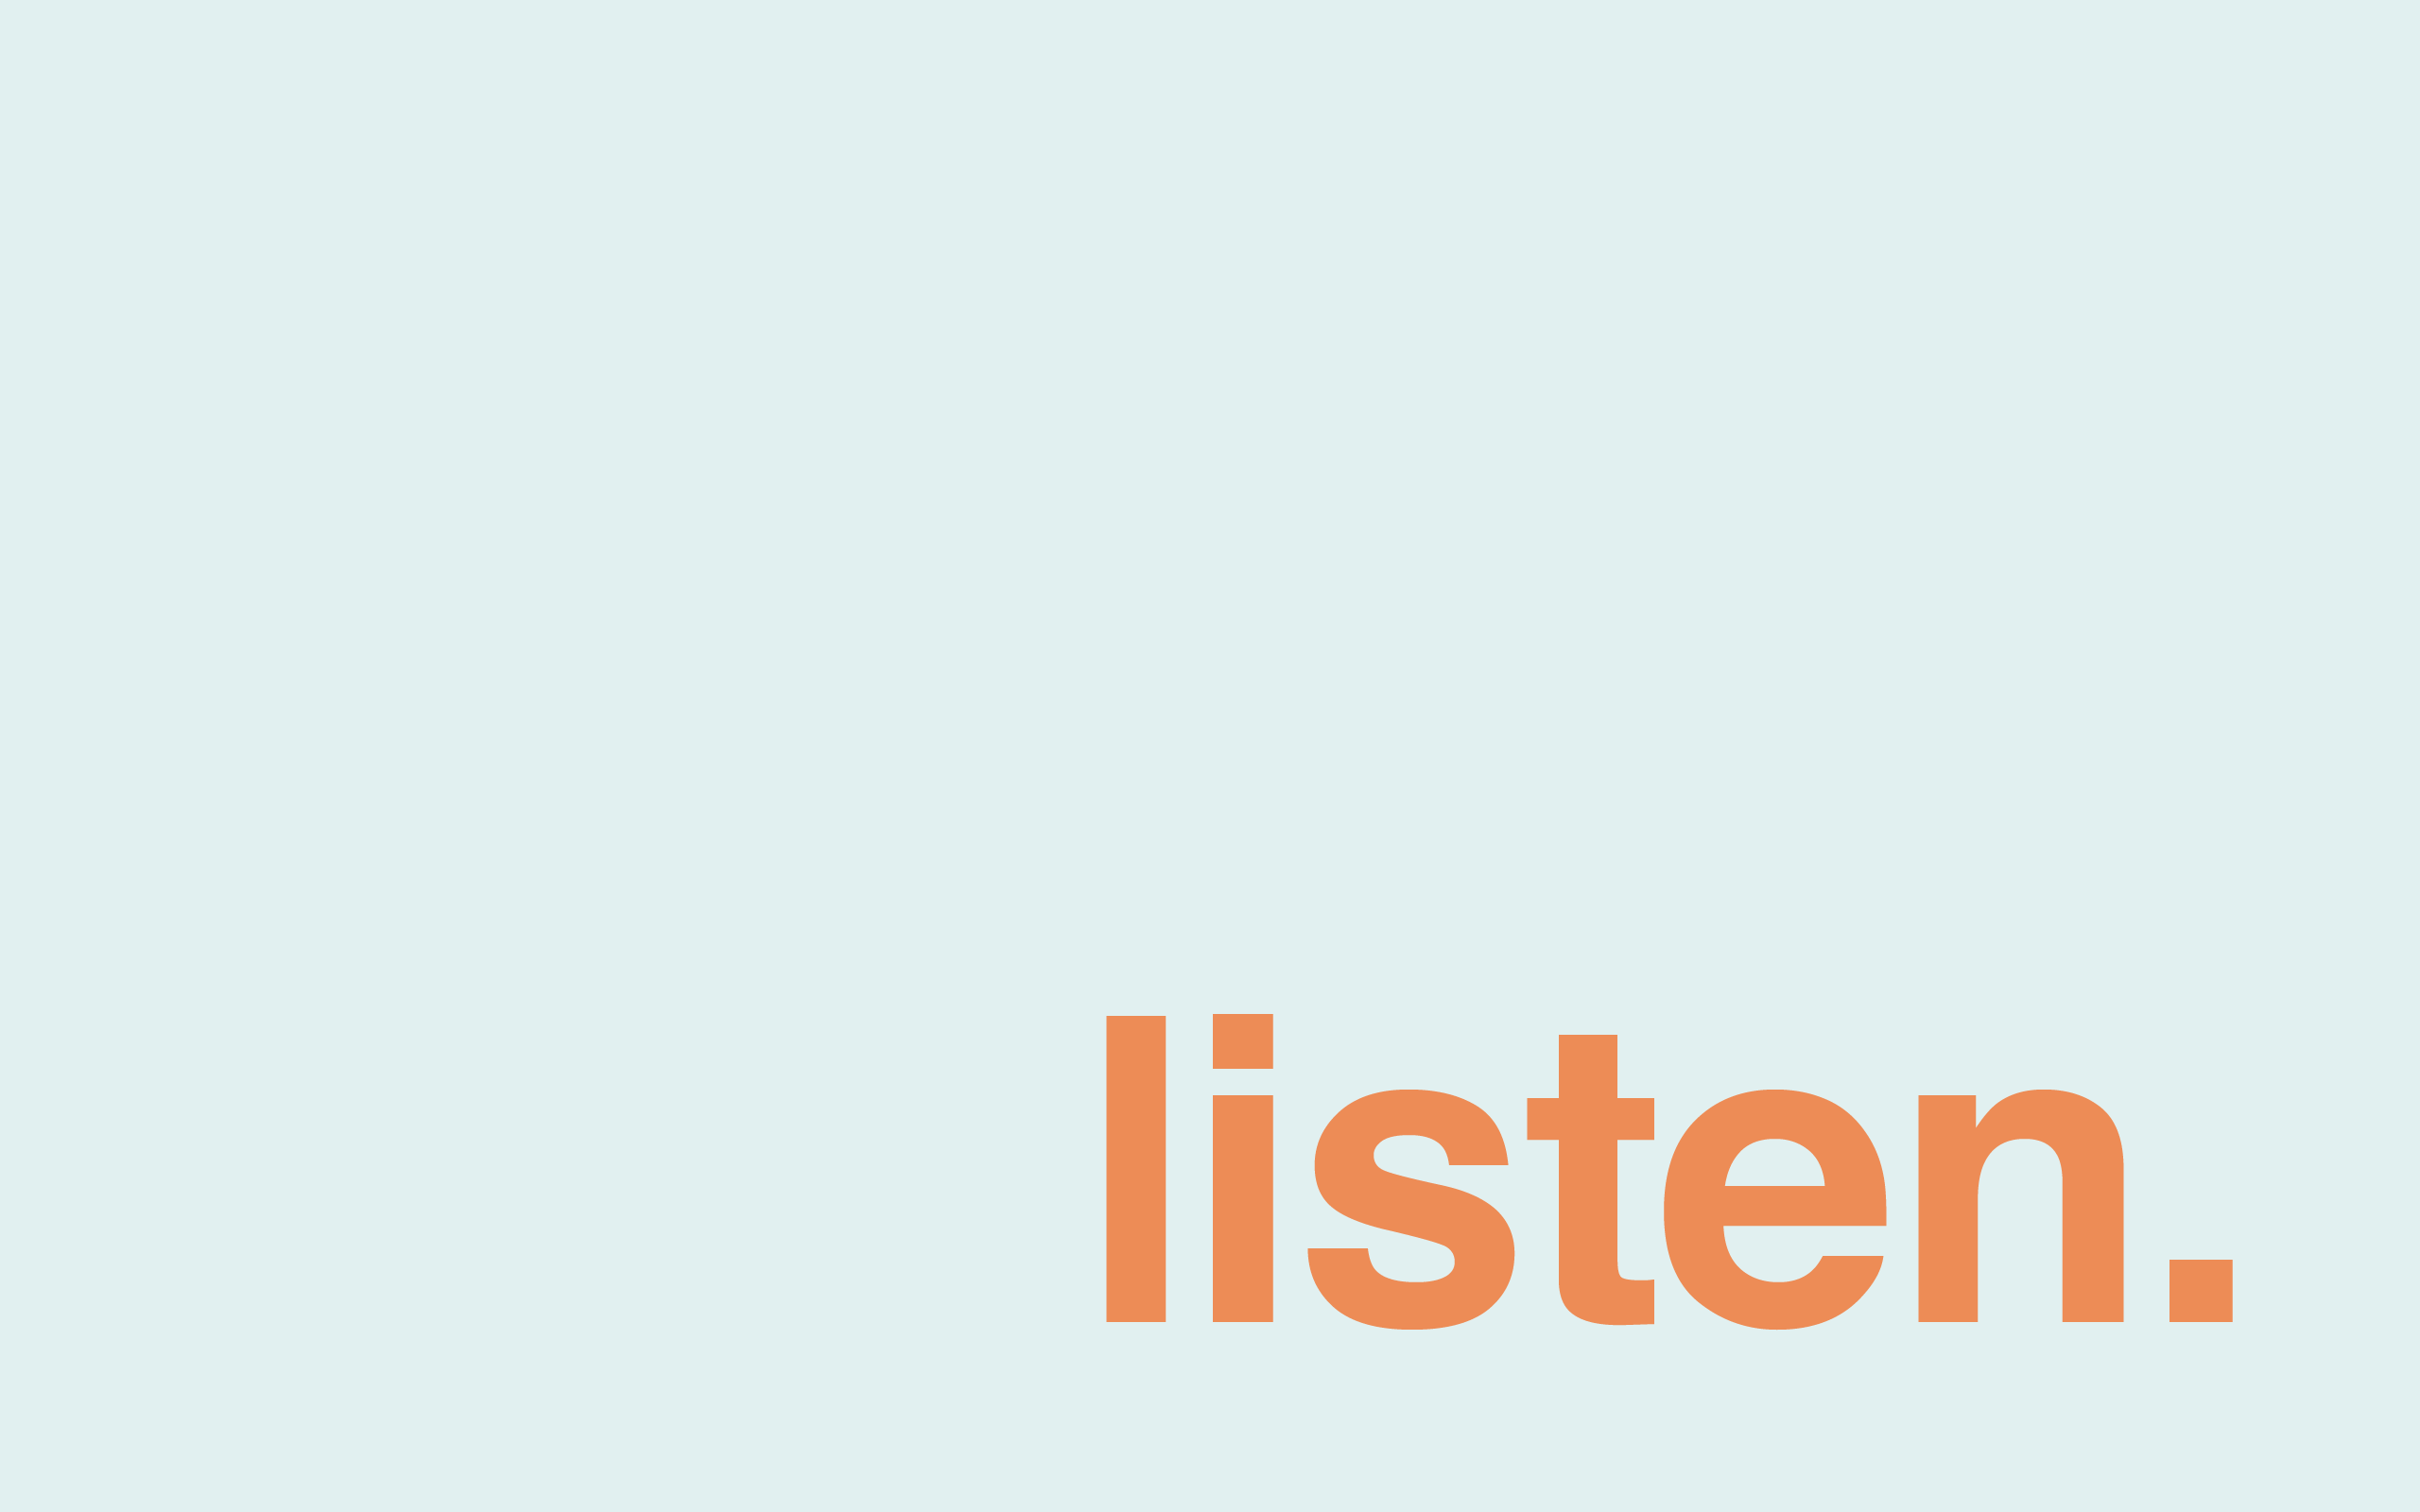 minimal-desktop-wallpaper-listen